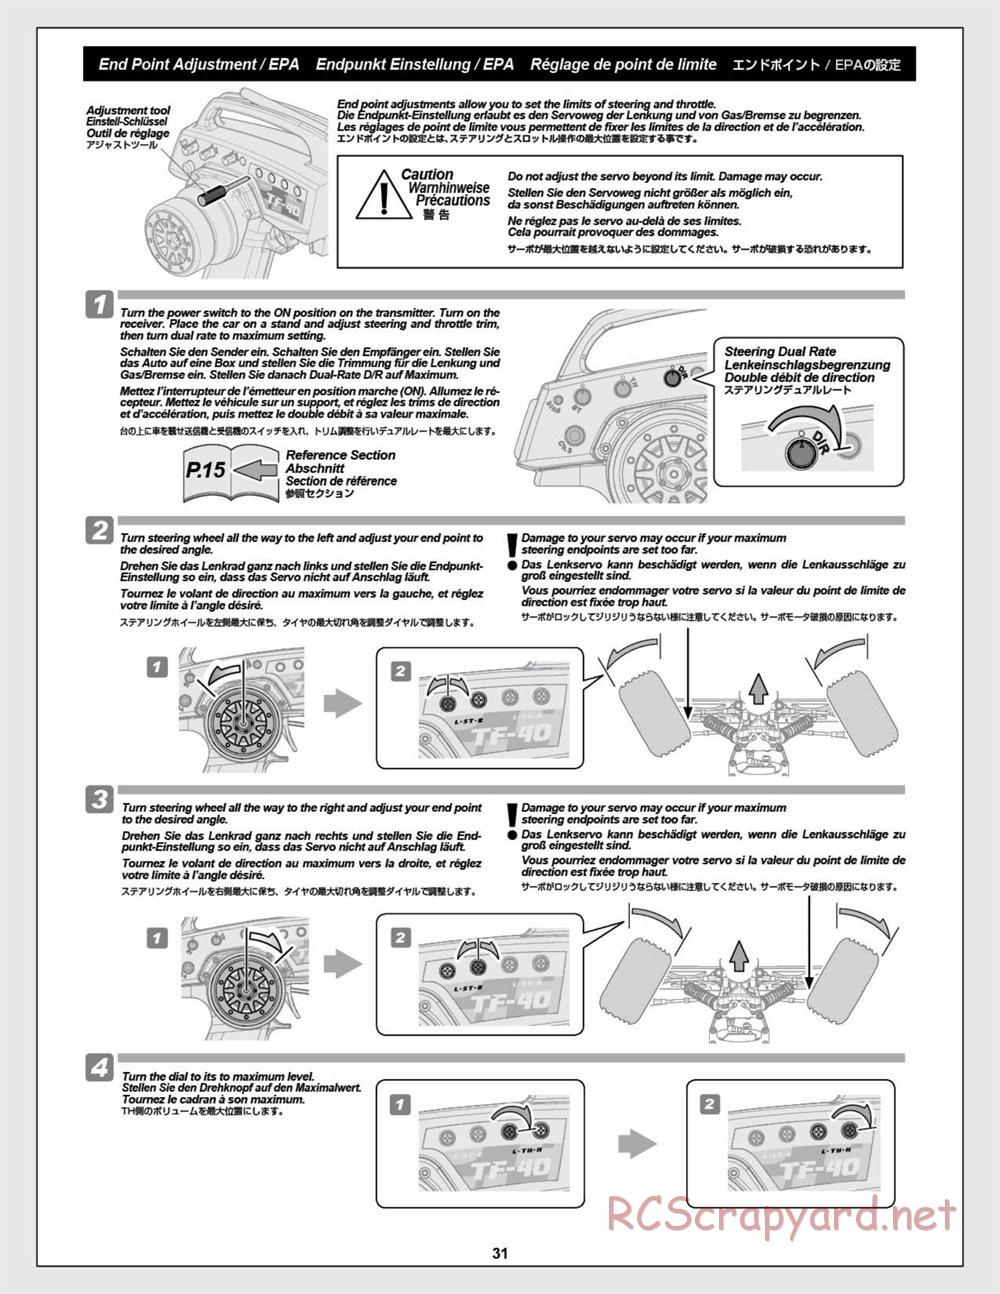 HPI - E-Firestorm-10T - Manual - Page 31